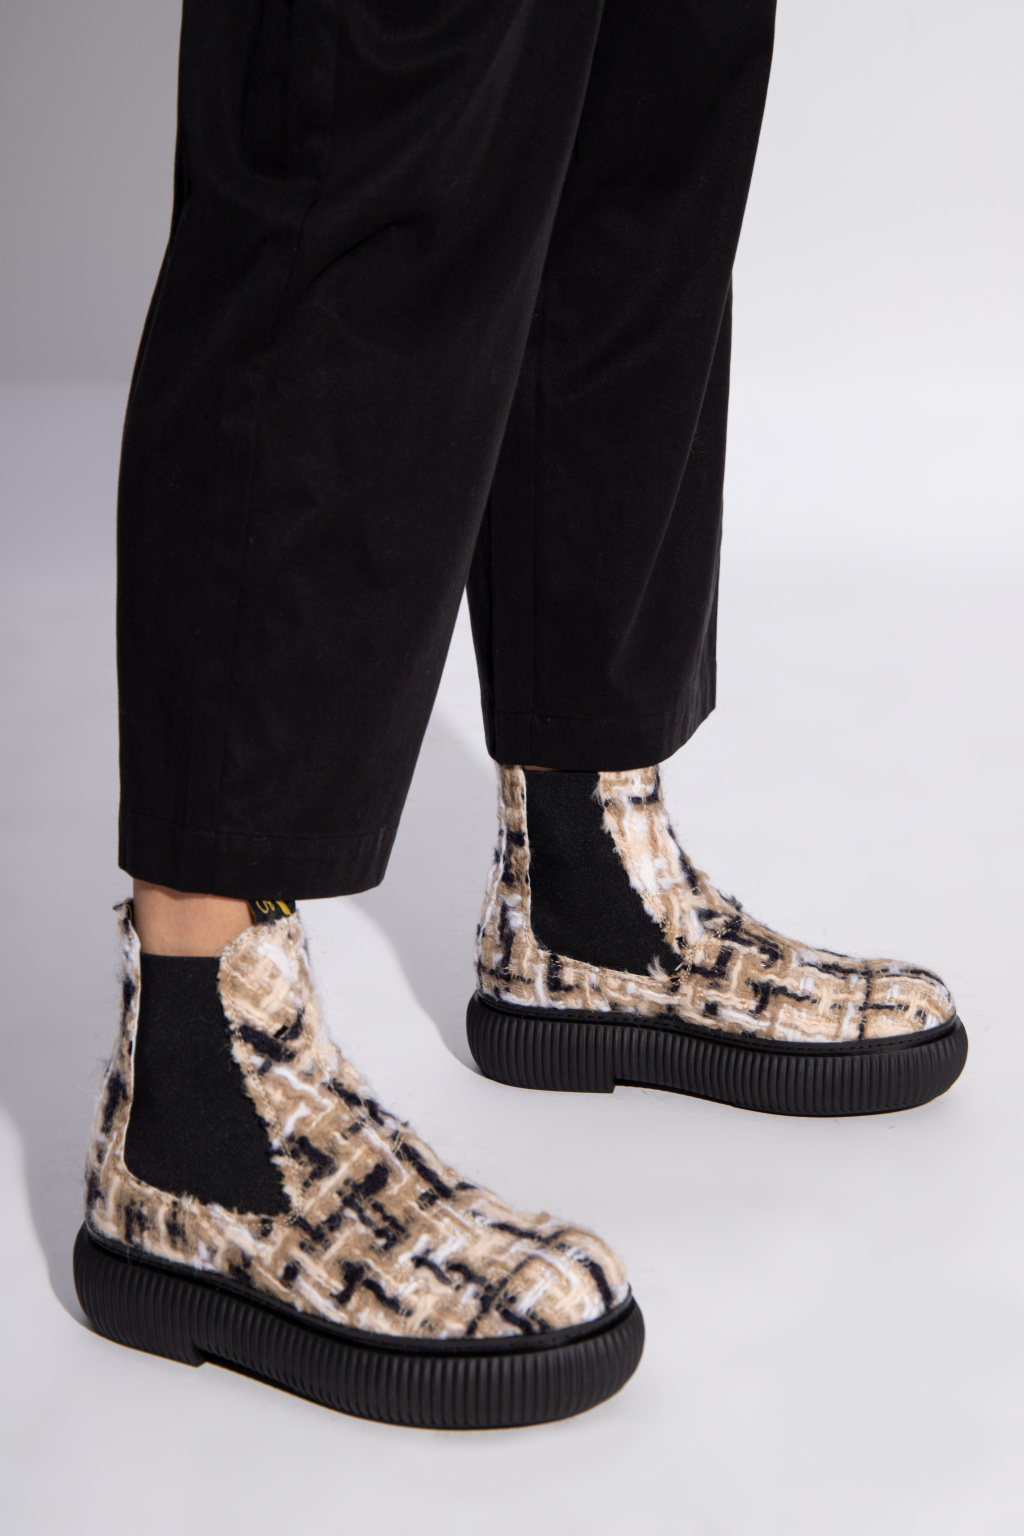 Lanvin ‘Arpge’ tweed boots